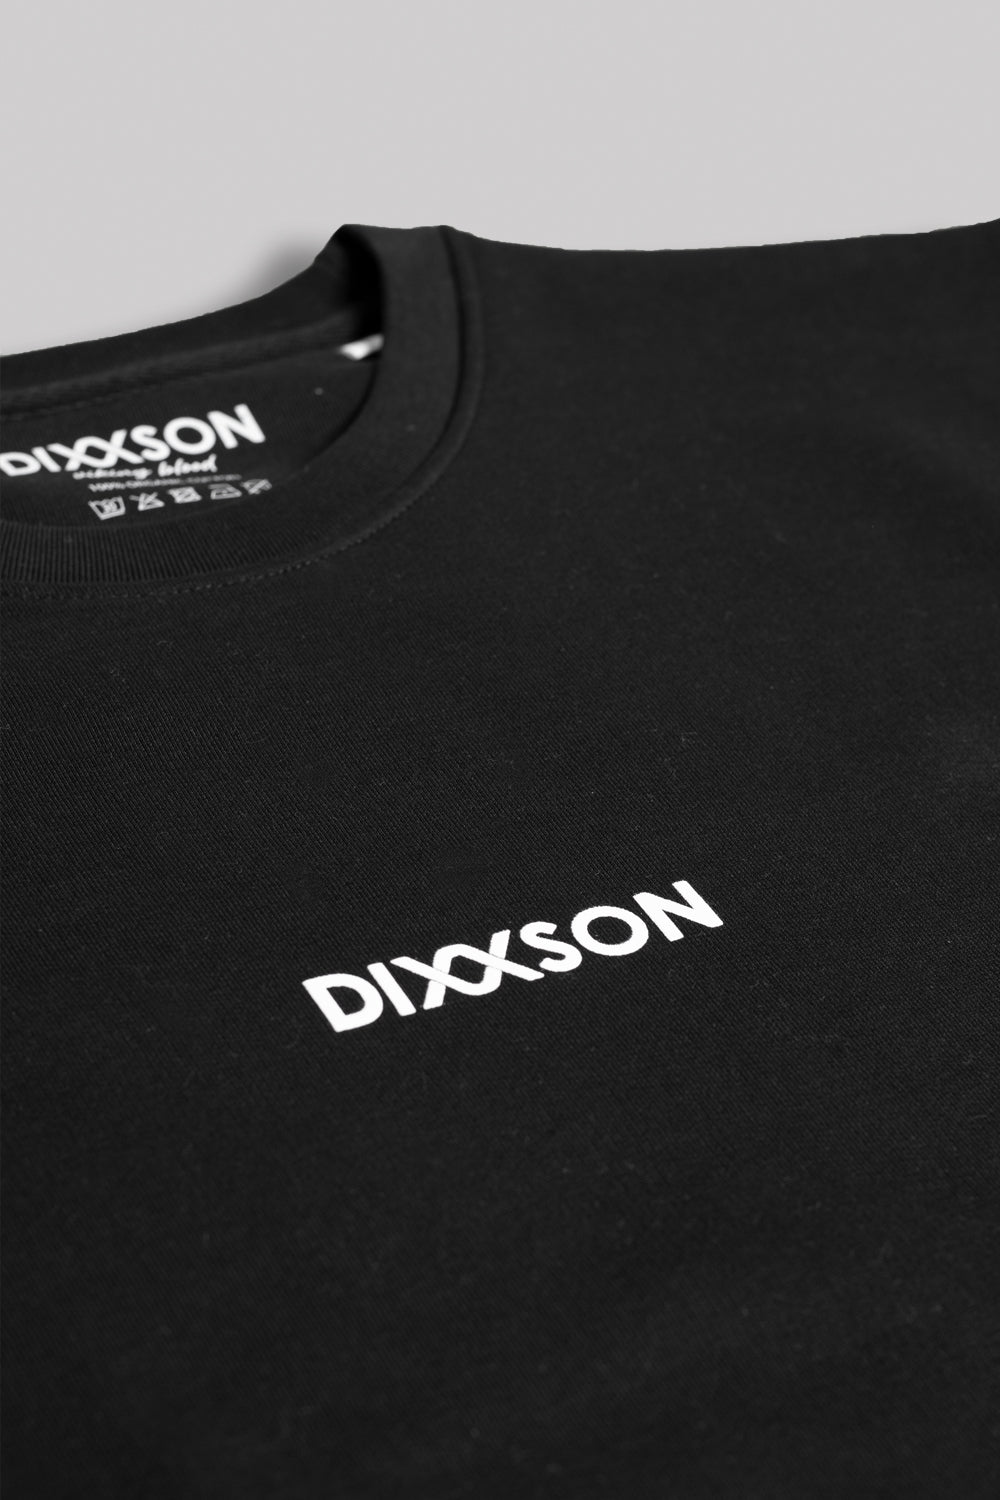 DIXXSON Crew Neck Sweater Bio-Baumwolle Ragnar black schwarz Burstlogo